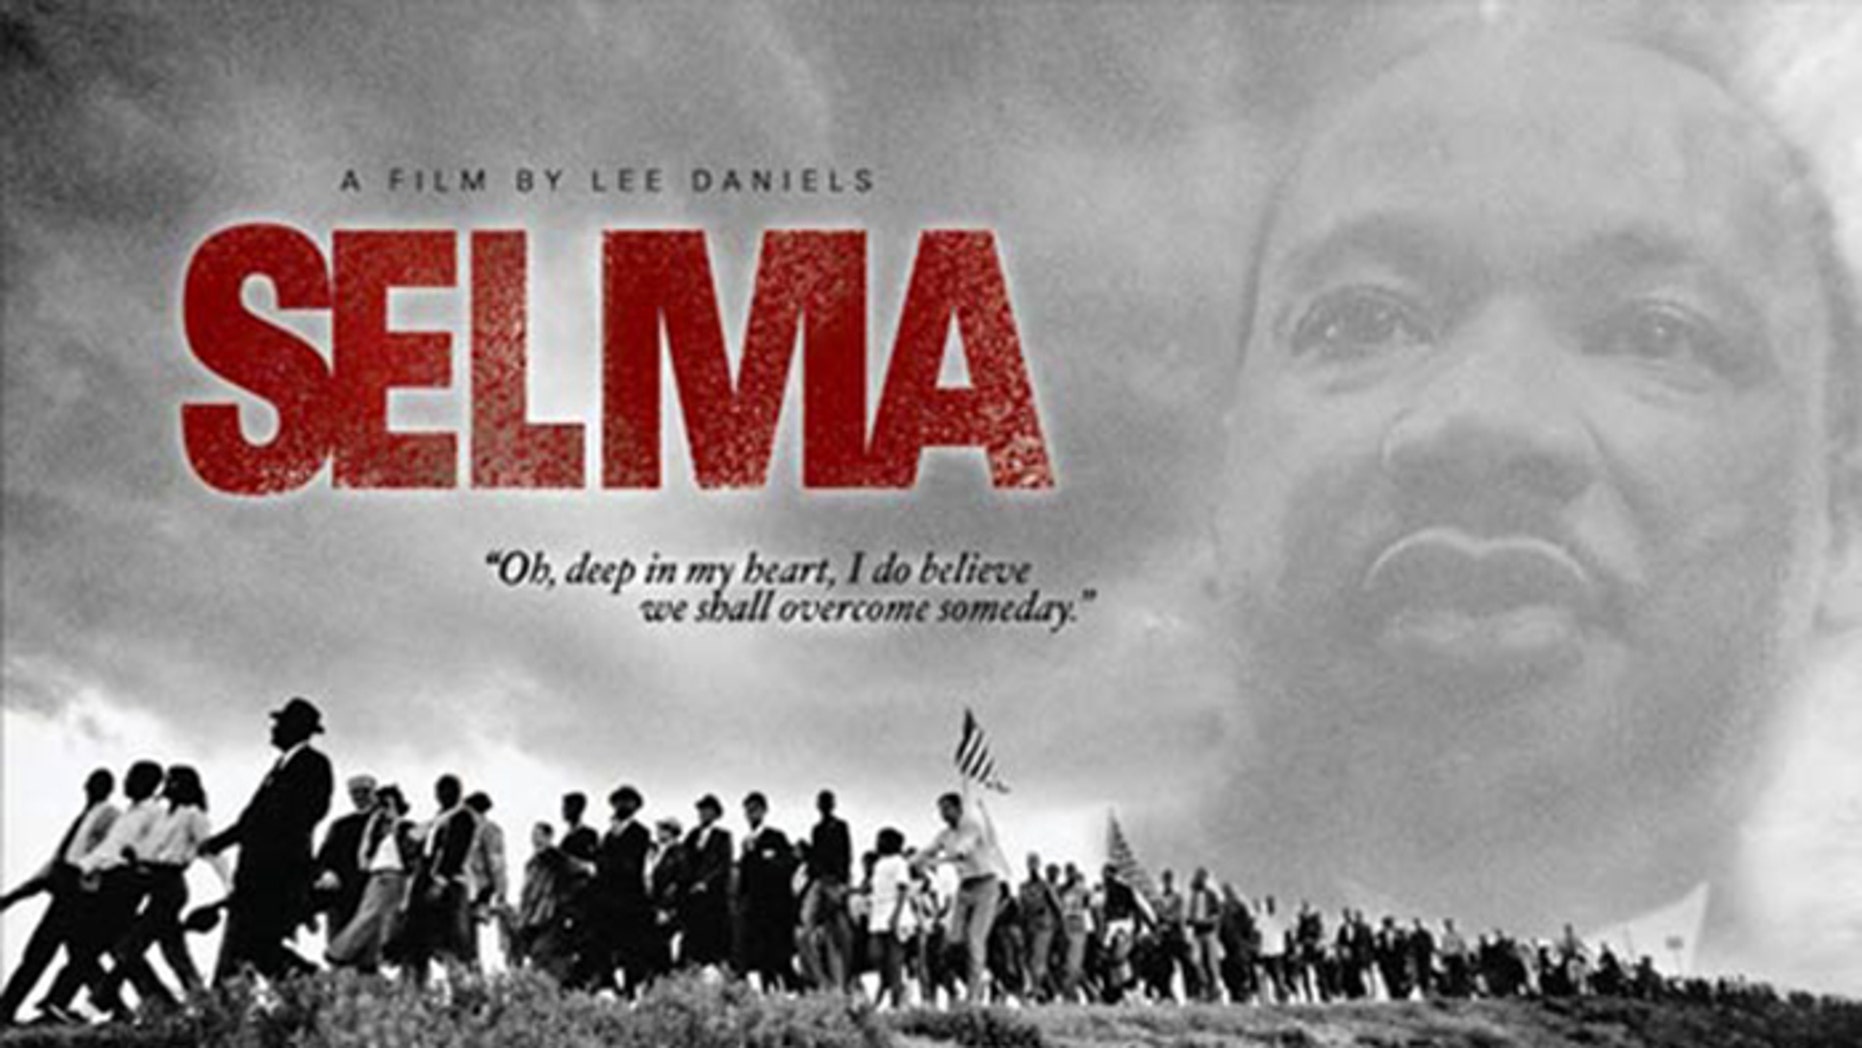 https://a57.foxnews.com/static.foxnews.com/foxnews.com/content/uploads/2018/09/1862/1048/selma-movie-poster.jpg